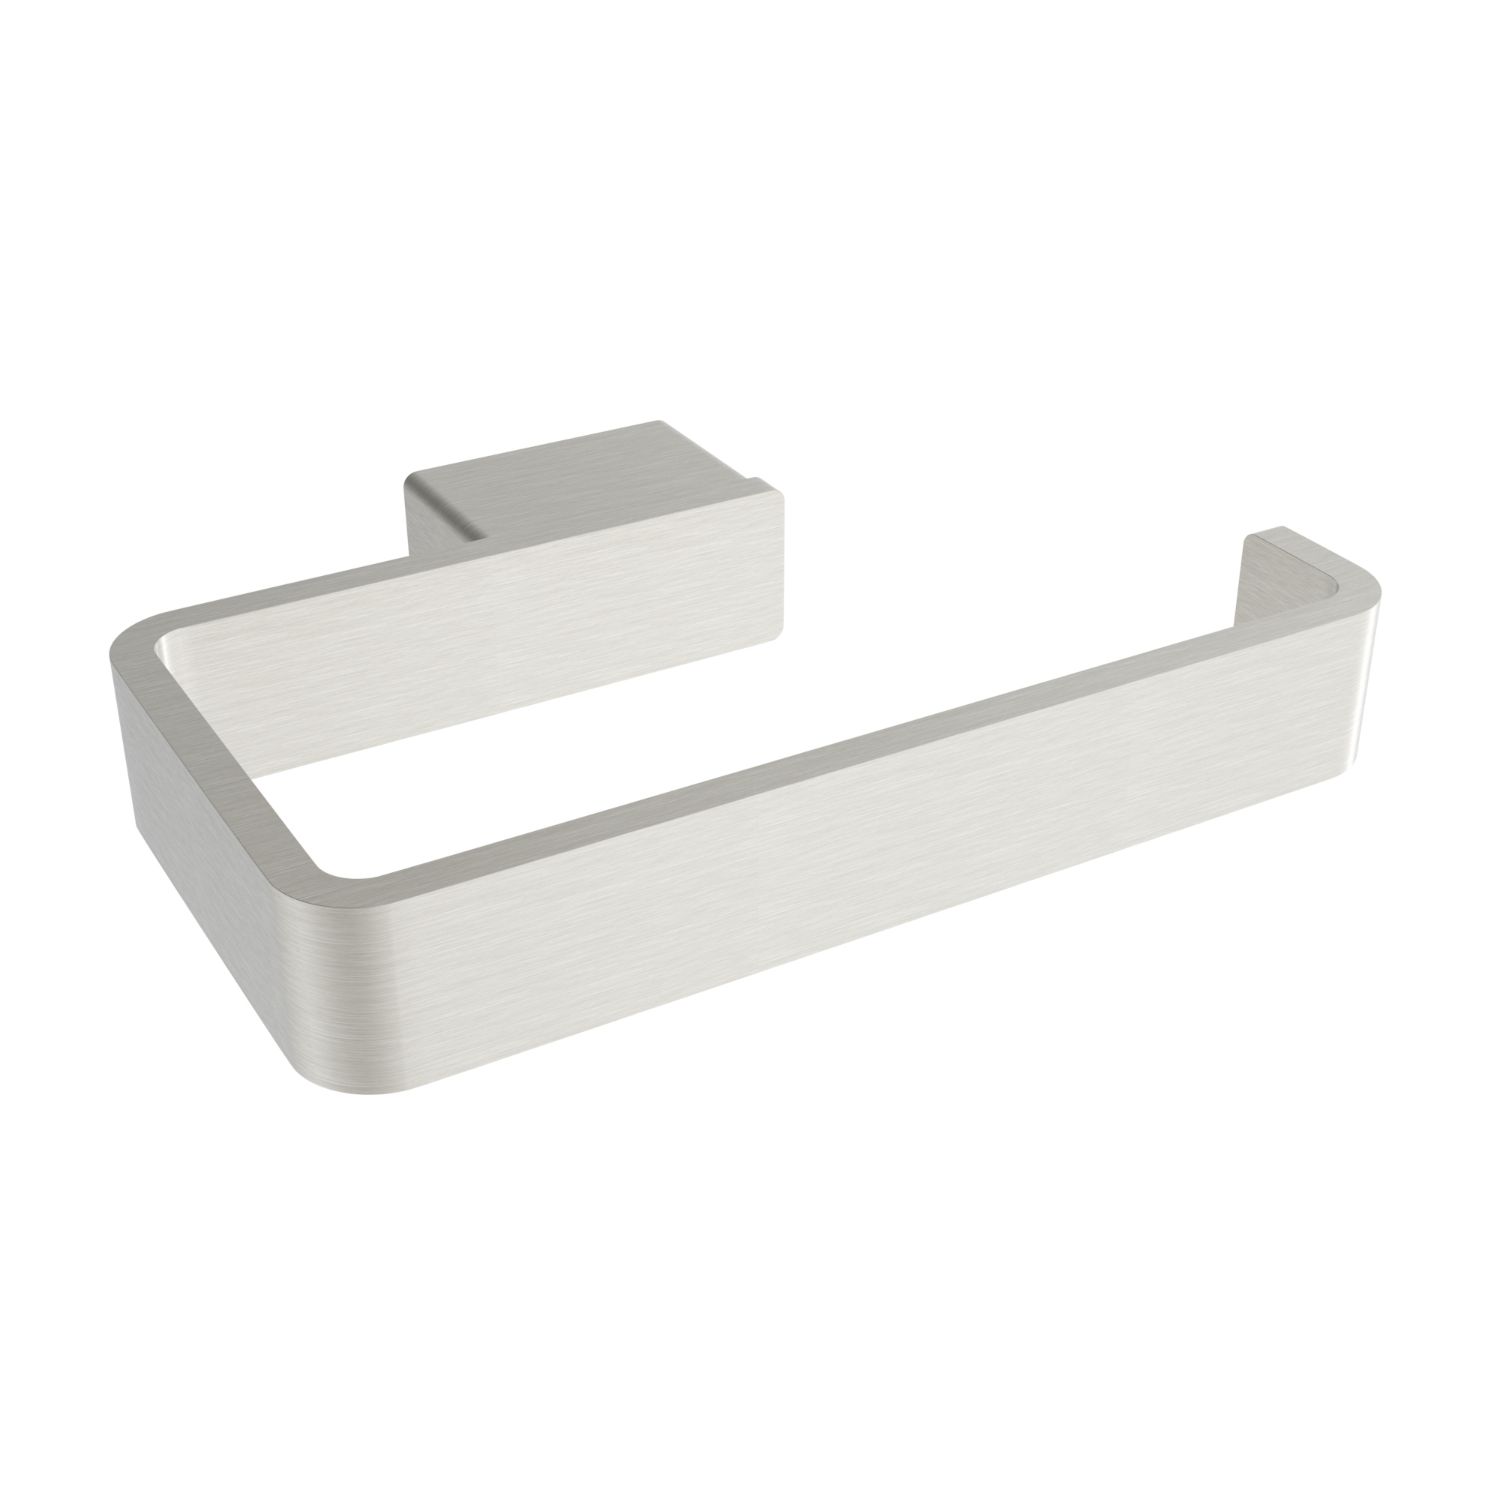 ICO Bath V3034 Cinder Toilet Paper Holder - Brushed Nickel (LH Post)